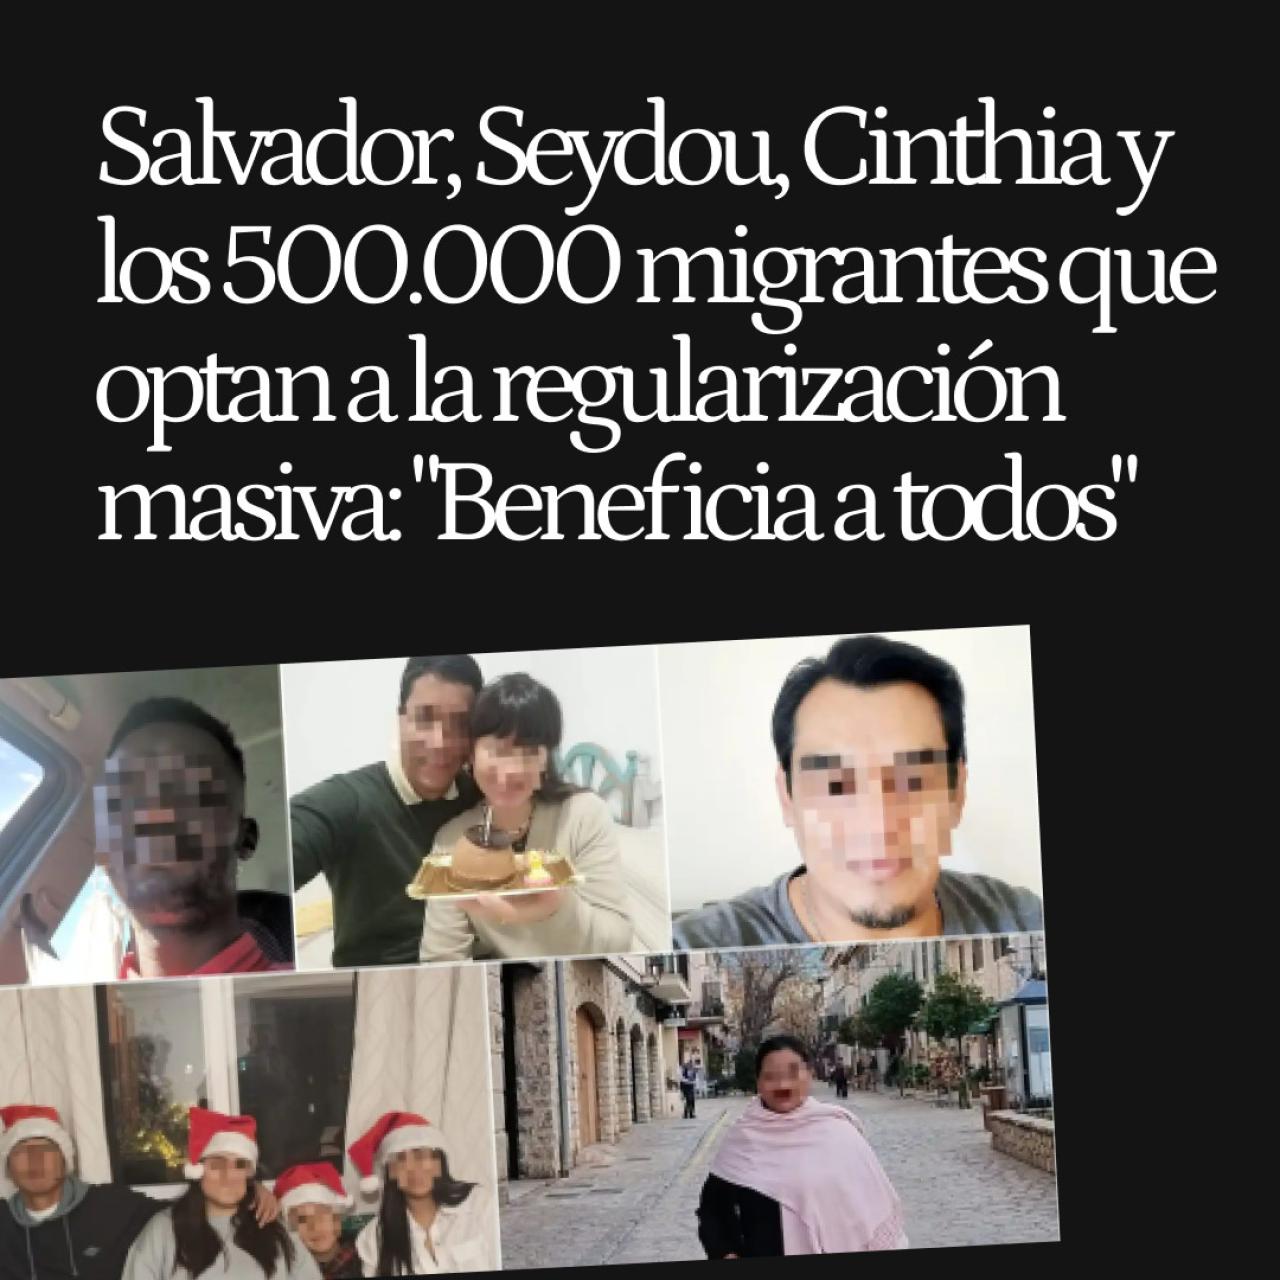 Salvador, Seydou, Cinthia y los 500.000 migrantes que optan a la regularización masiva: "Beneficia a todos"